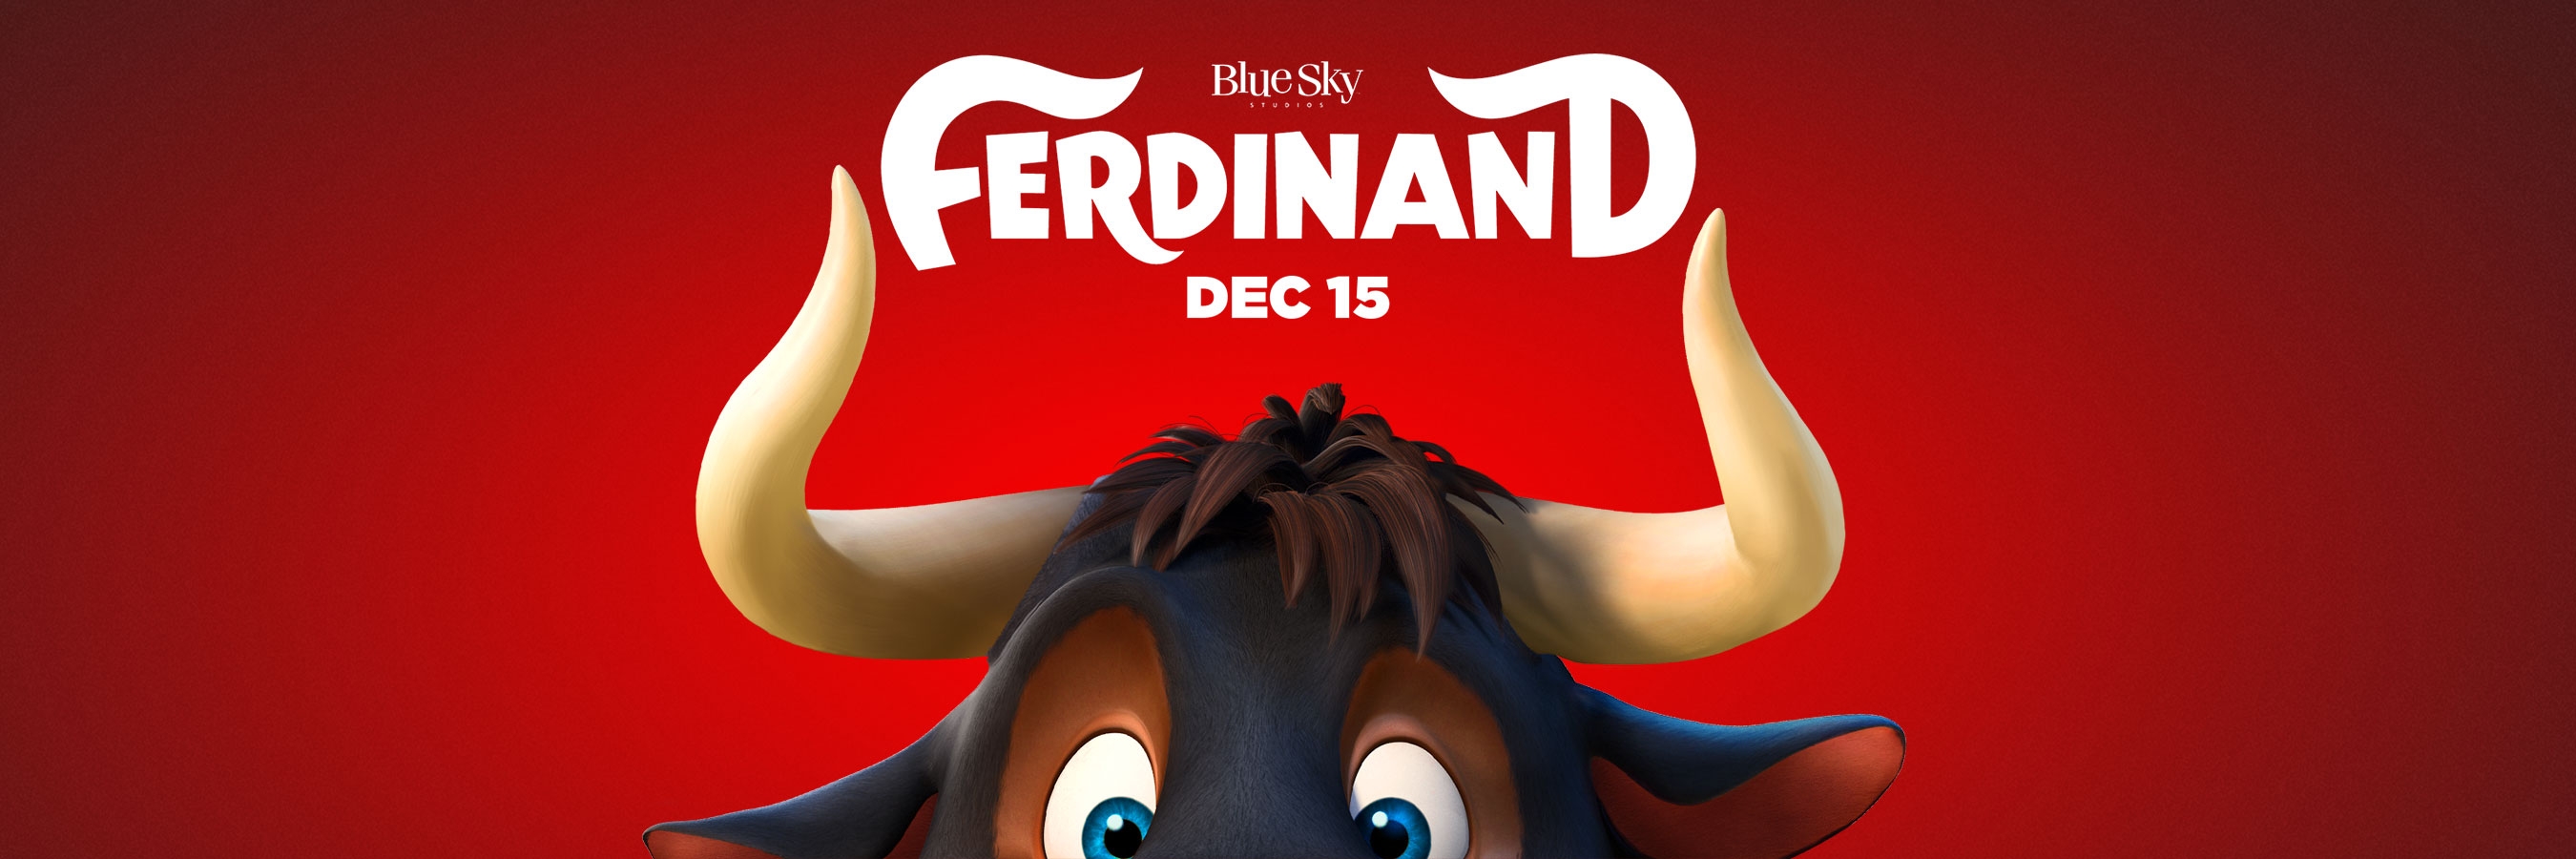 Ferdinand Movie Still Wallpapers